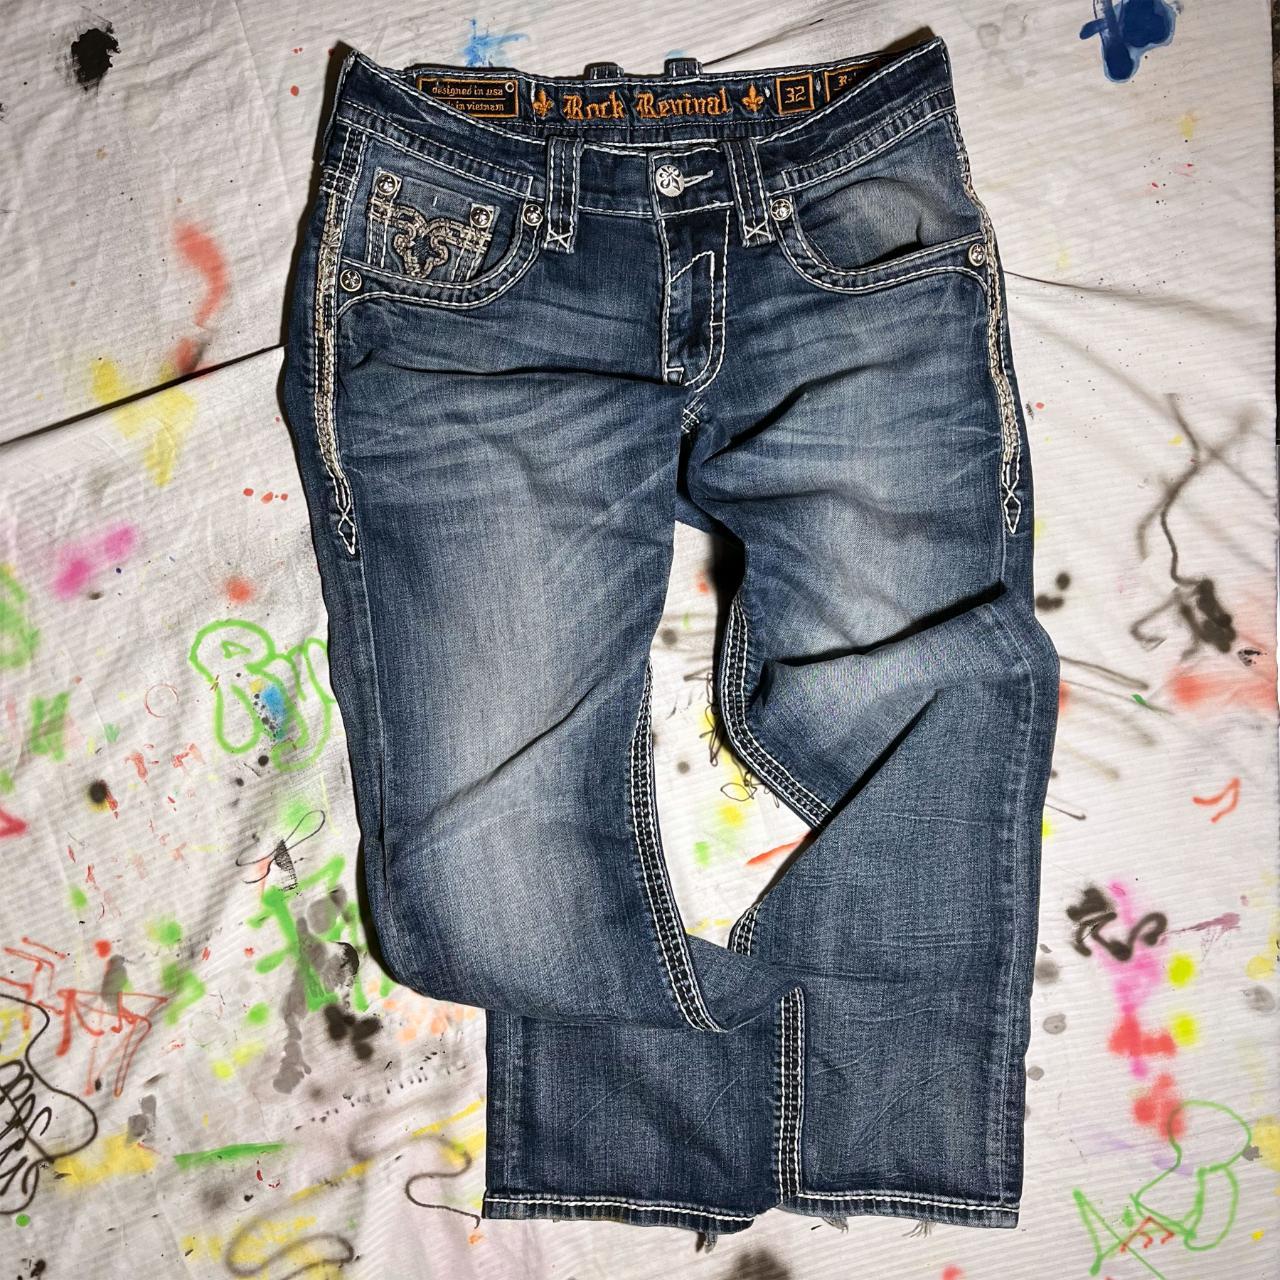 Rock Revival jeans (rahm boot) (size 32) -... - Depop